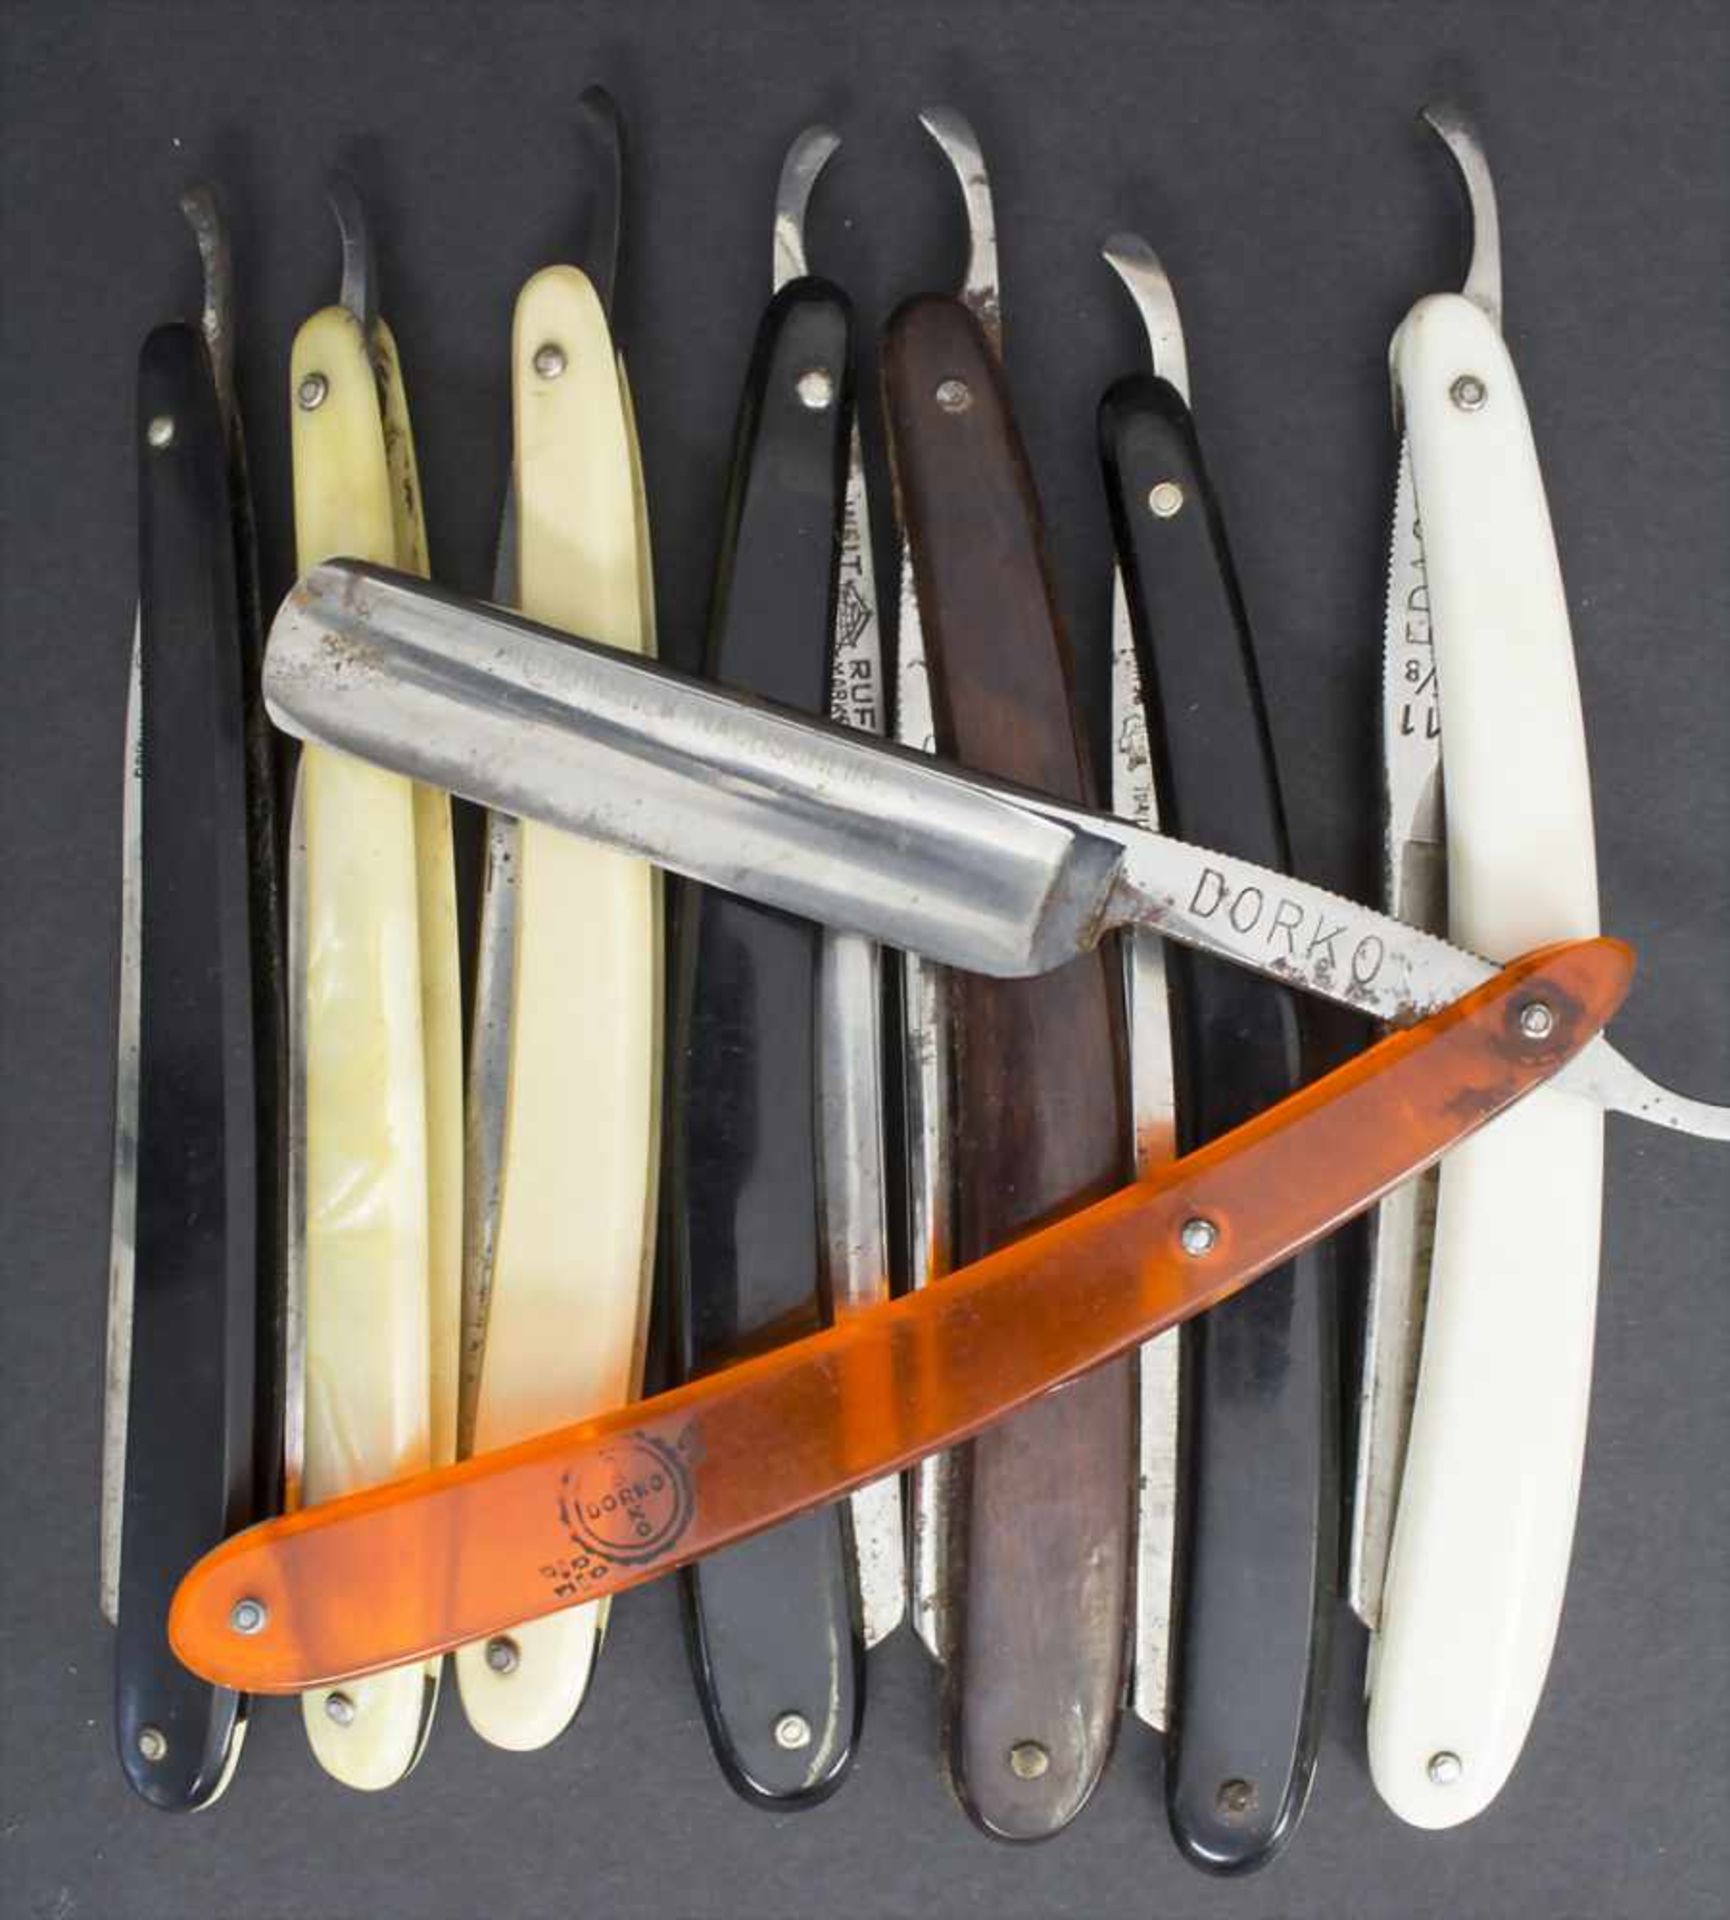 8 Rasiermesser / 8 razors, Solingen, 1. Hälfte 20. Jh.Material: Kunststoff, Holz, Stahlklinge,